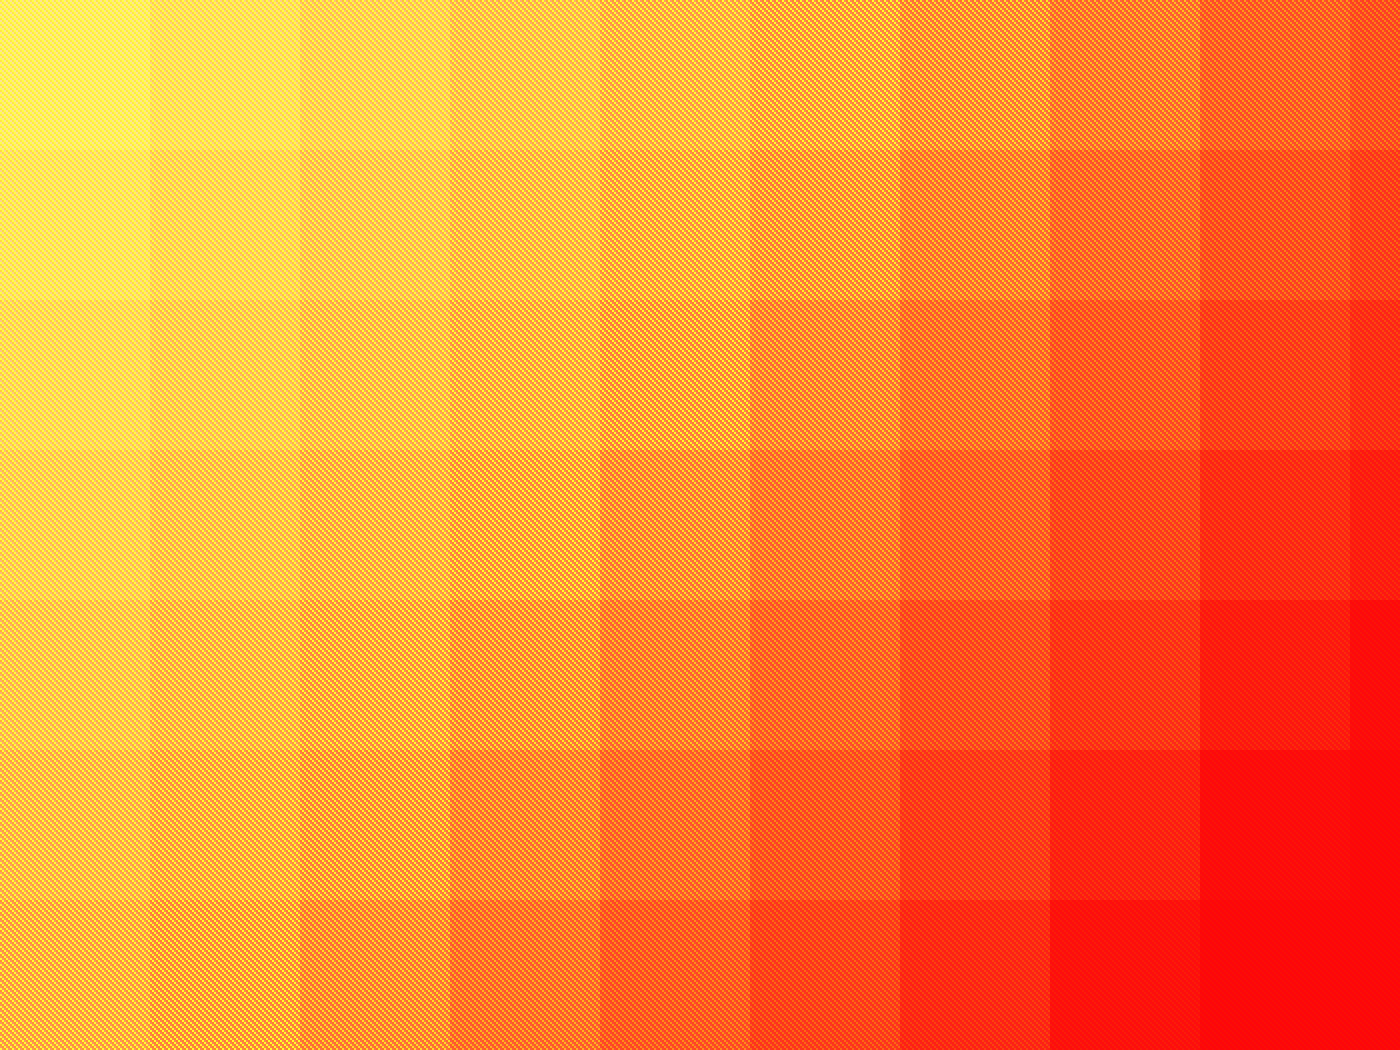 wallpaper laranja,plaid,orange,pattern,yellow,red